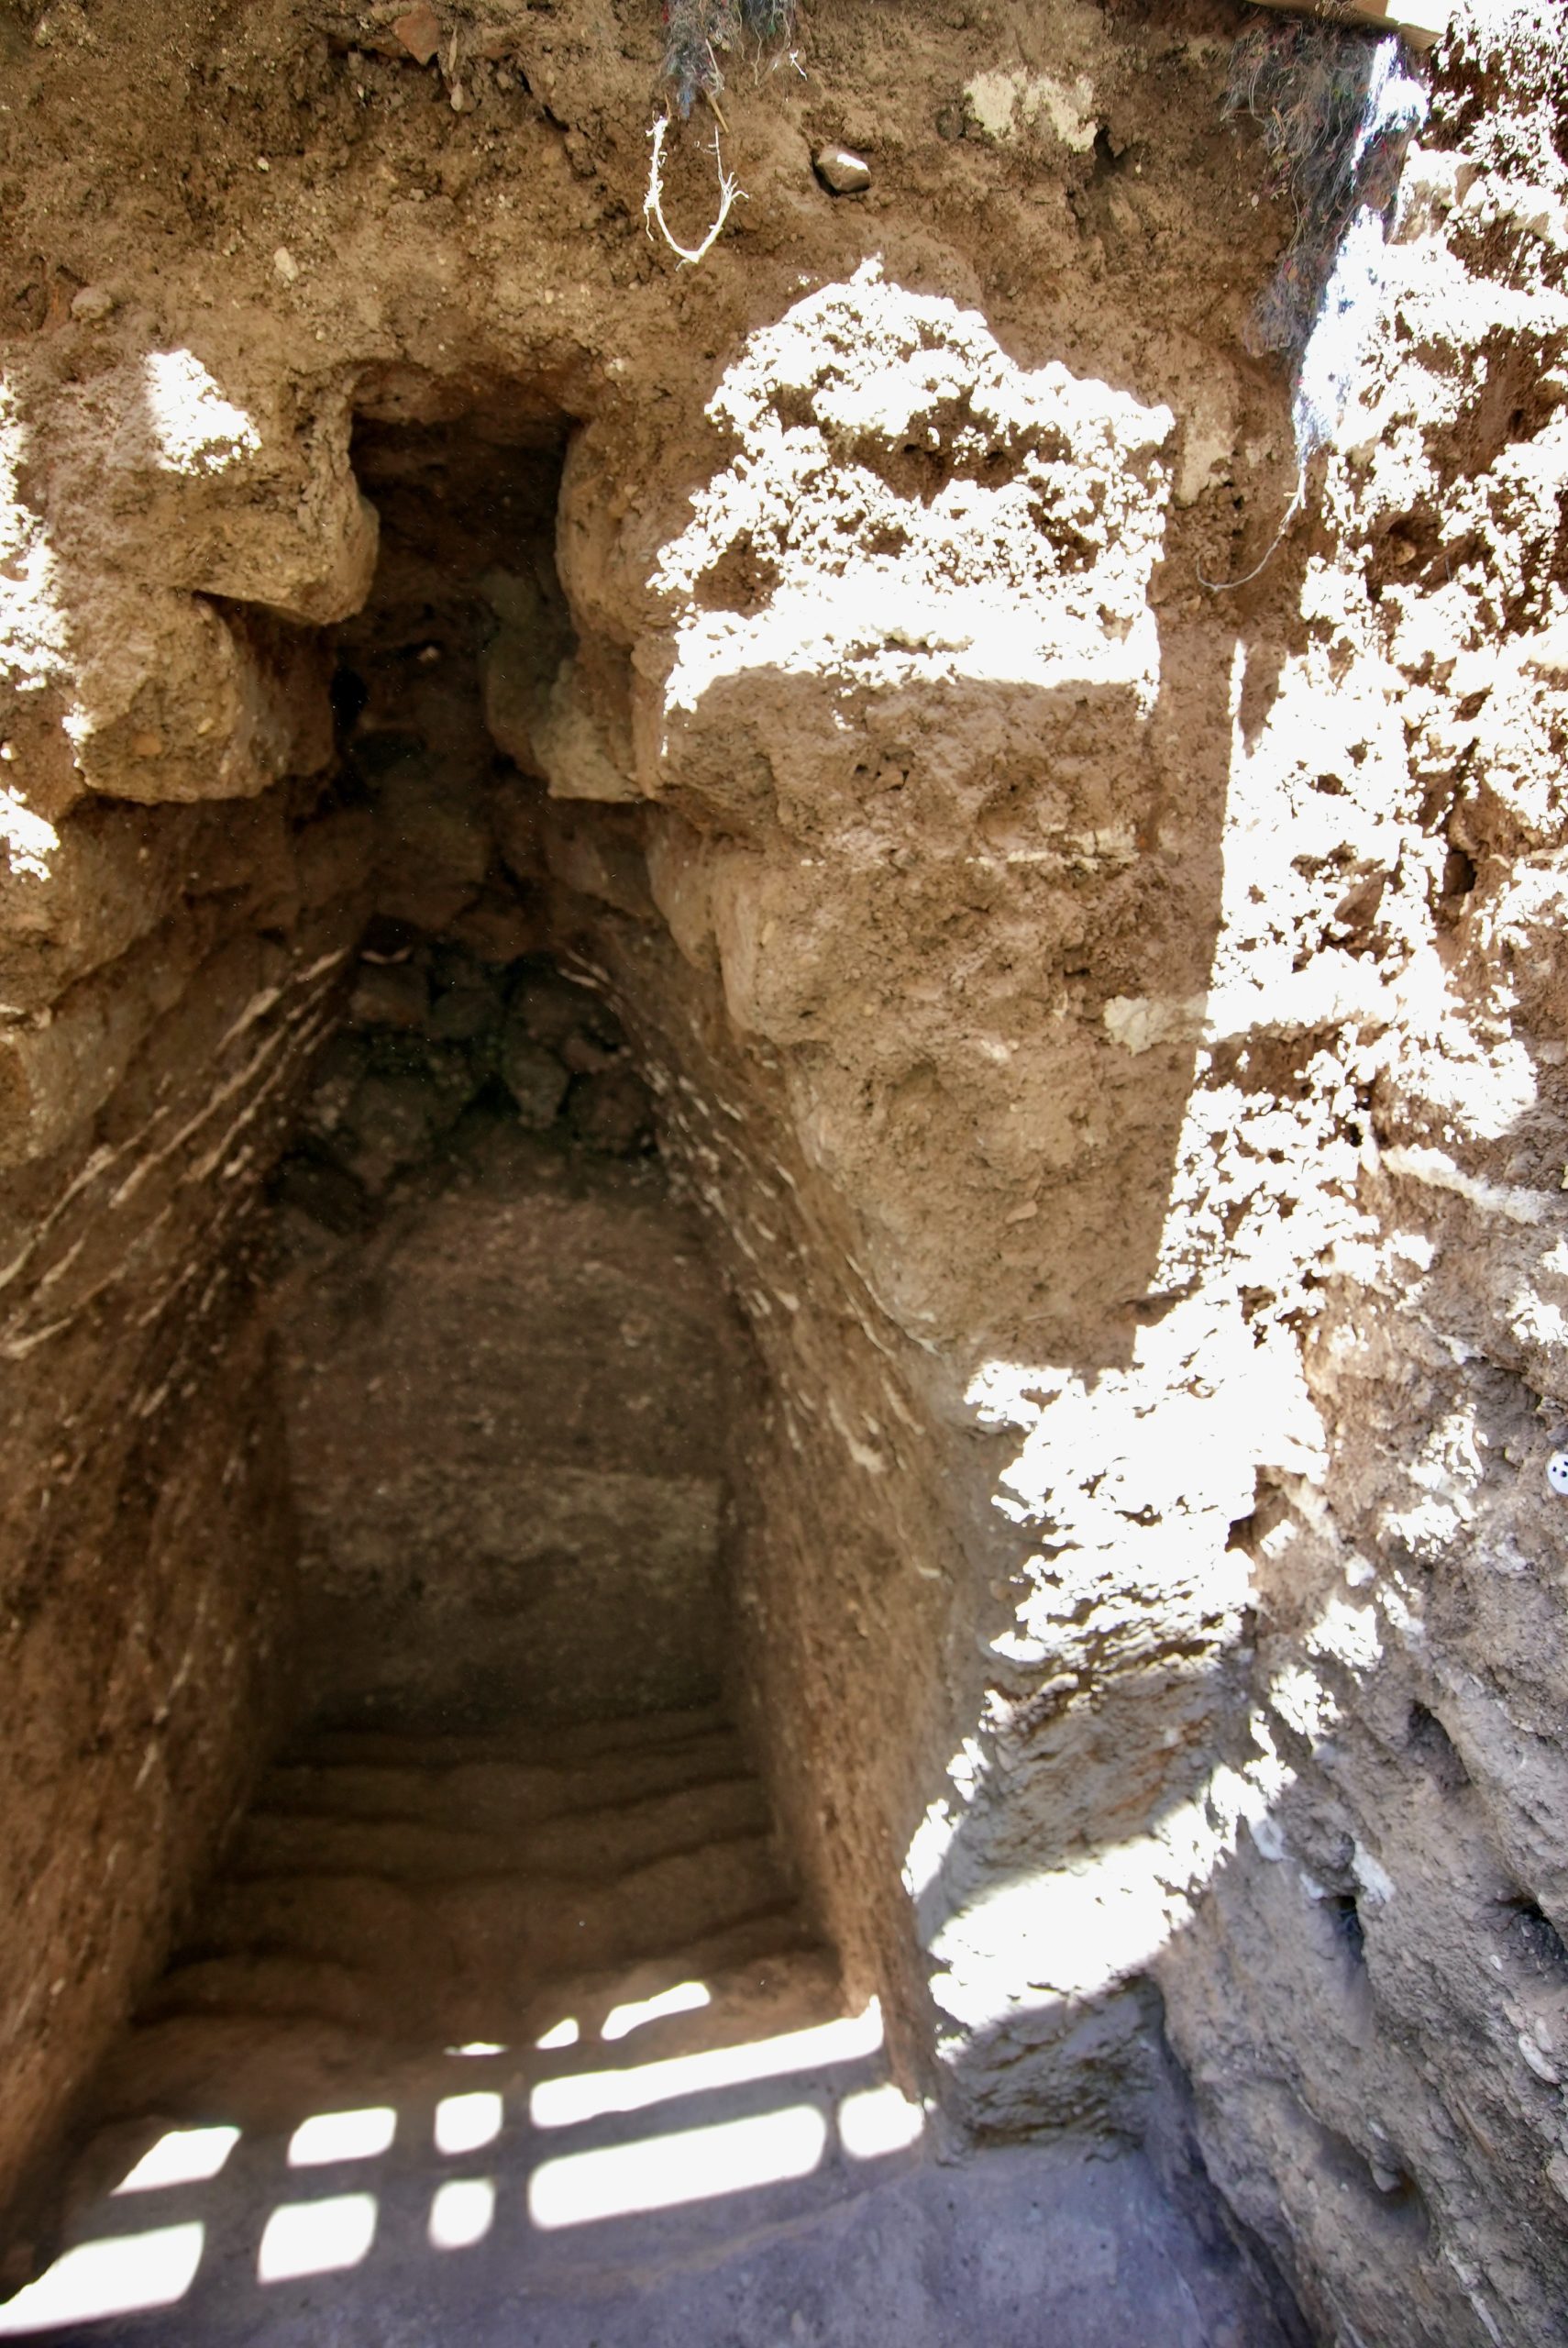 Pasaje con bóveda voladiza, Tel Shimron. Un cuenco de ofrendas intacto de siete copas fue descubierto en escombros cenicientos en el rellano frente a la bóveda. Foto: Eyecon,